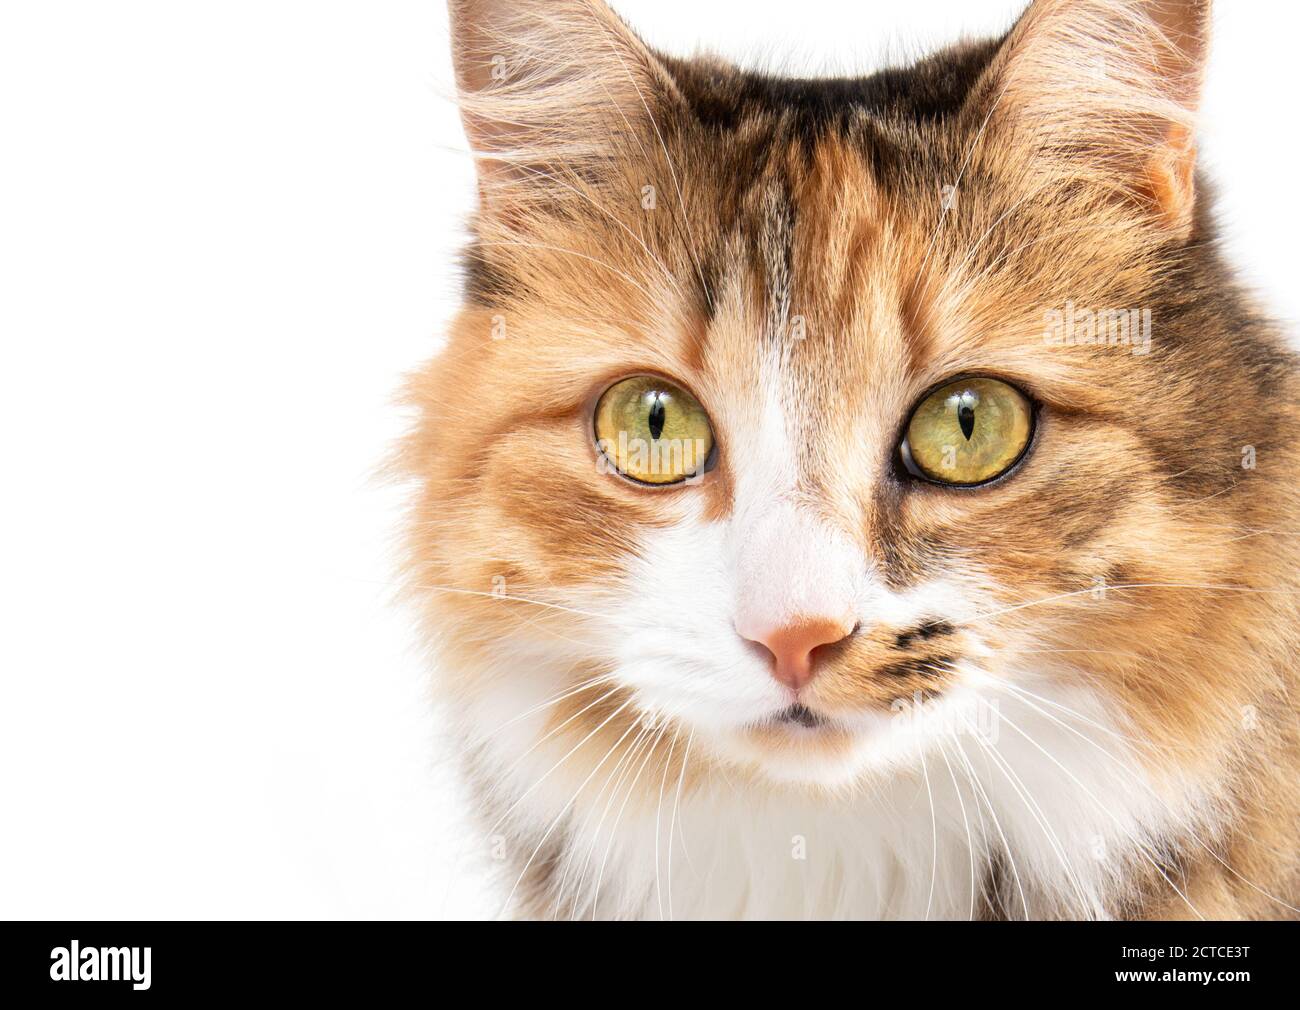 Liebenswert Katze Kopf Porträt. Vorderansicht. Bunte (torbie) lange Haare flauschige weibliche Katze mit unglaublichen Markierungen und auffallenden gelben Augen. Stockfoto